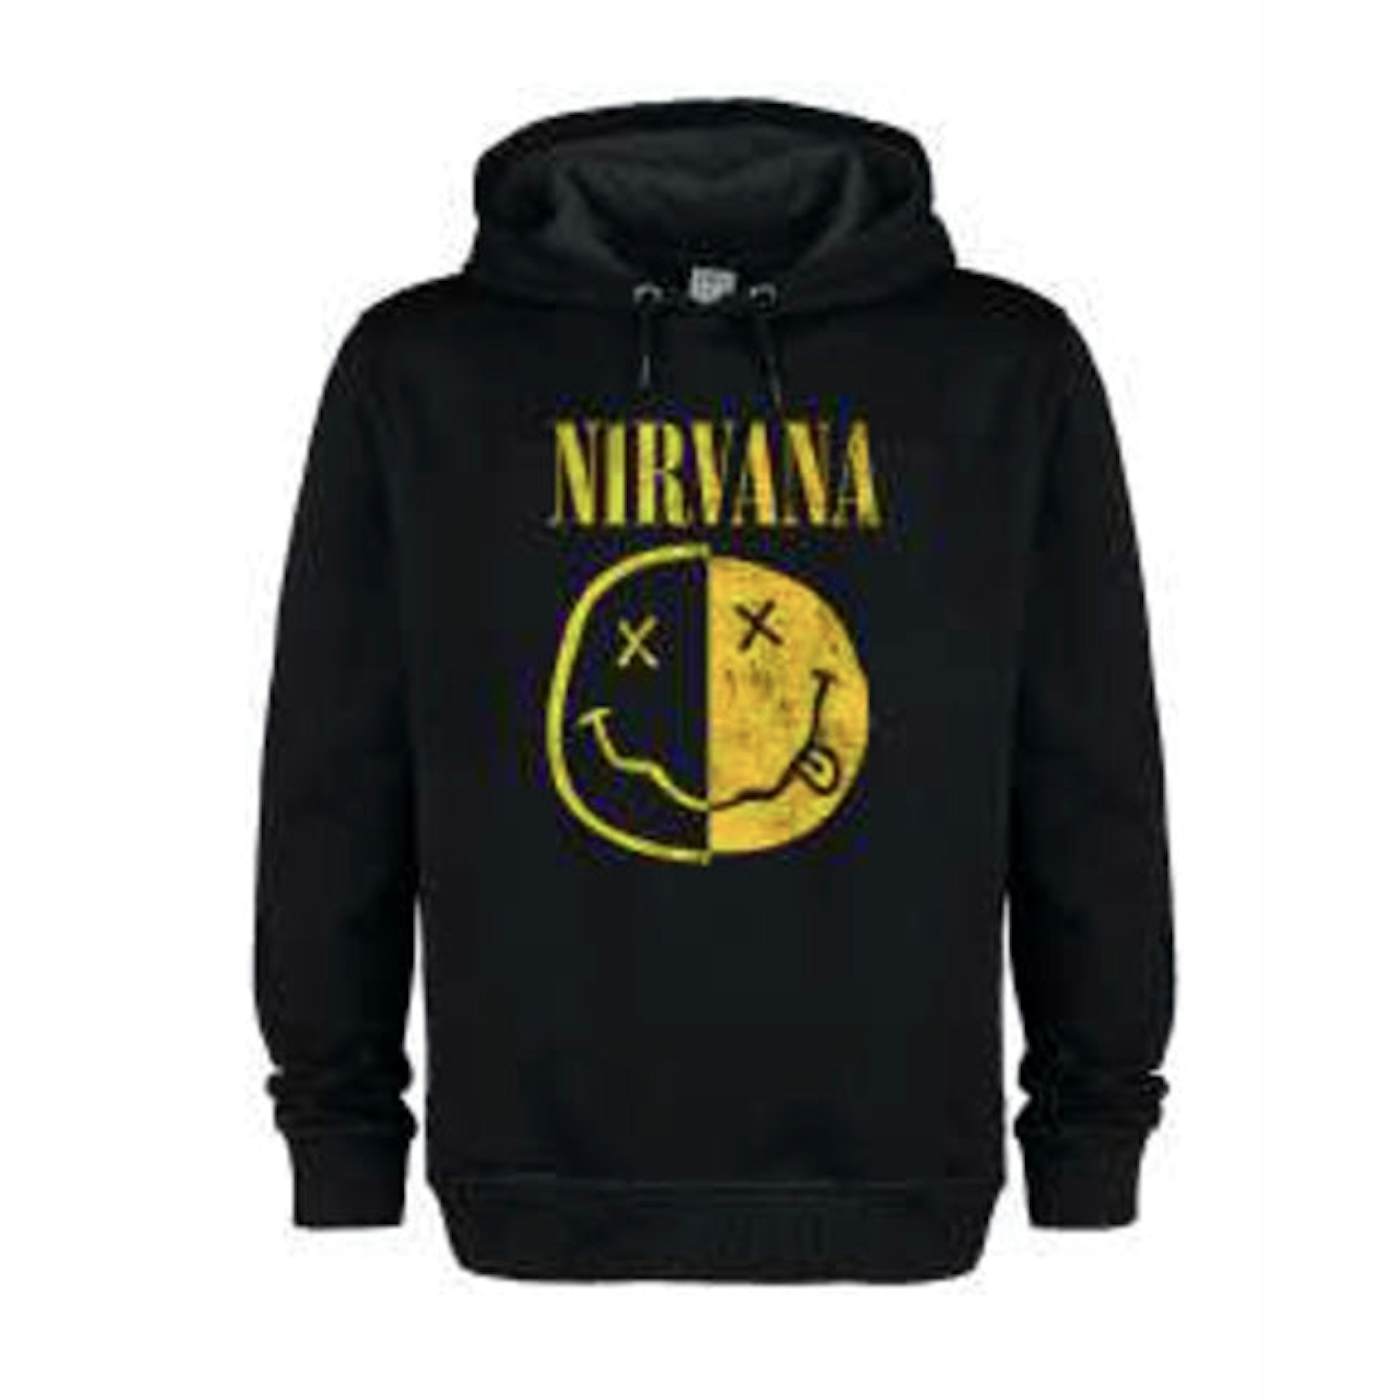 Nirvana Vintage Hoodie - Amplified Spliced Smiley